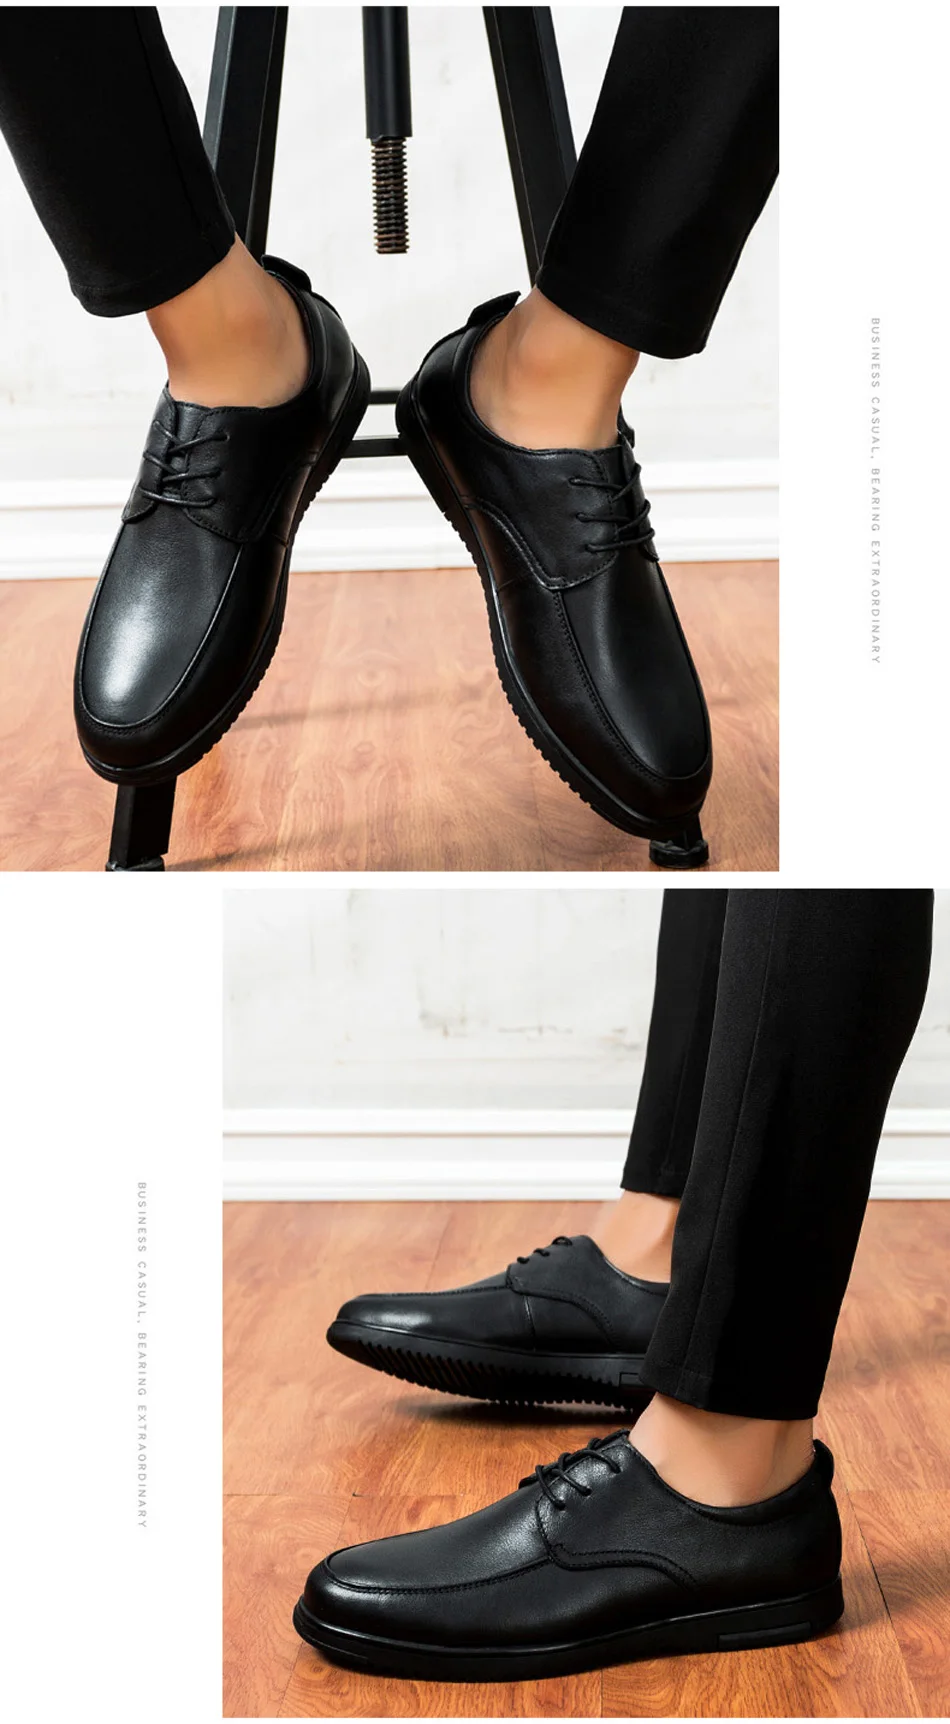 Г. Мужские модельные туфли Классическая официальная обувь из натуральной коровьей кожи, коричневый, черный цвет, на шнуровке элегантные мужские офисные туфли, большой размер 47